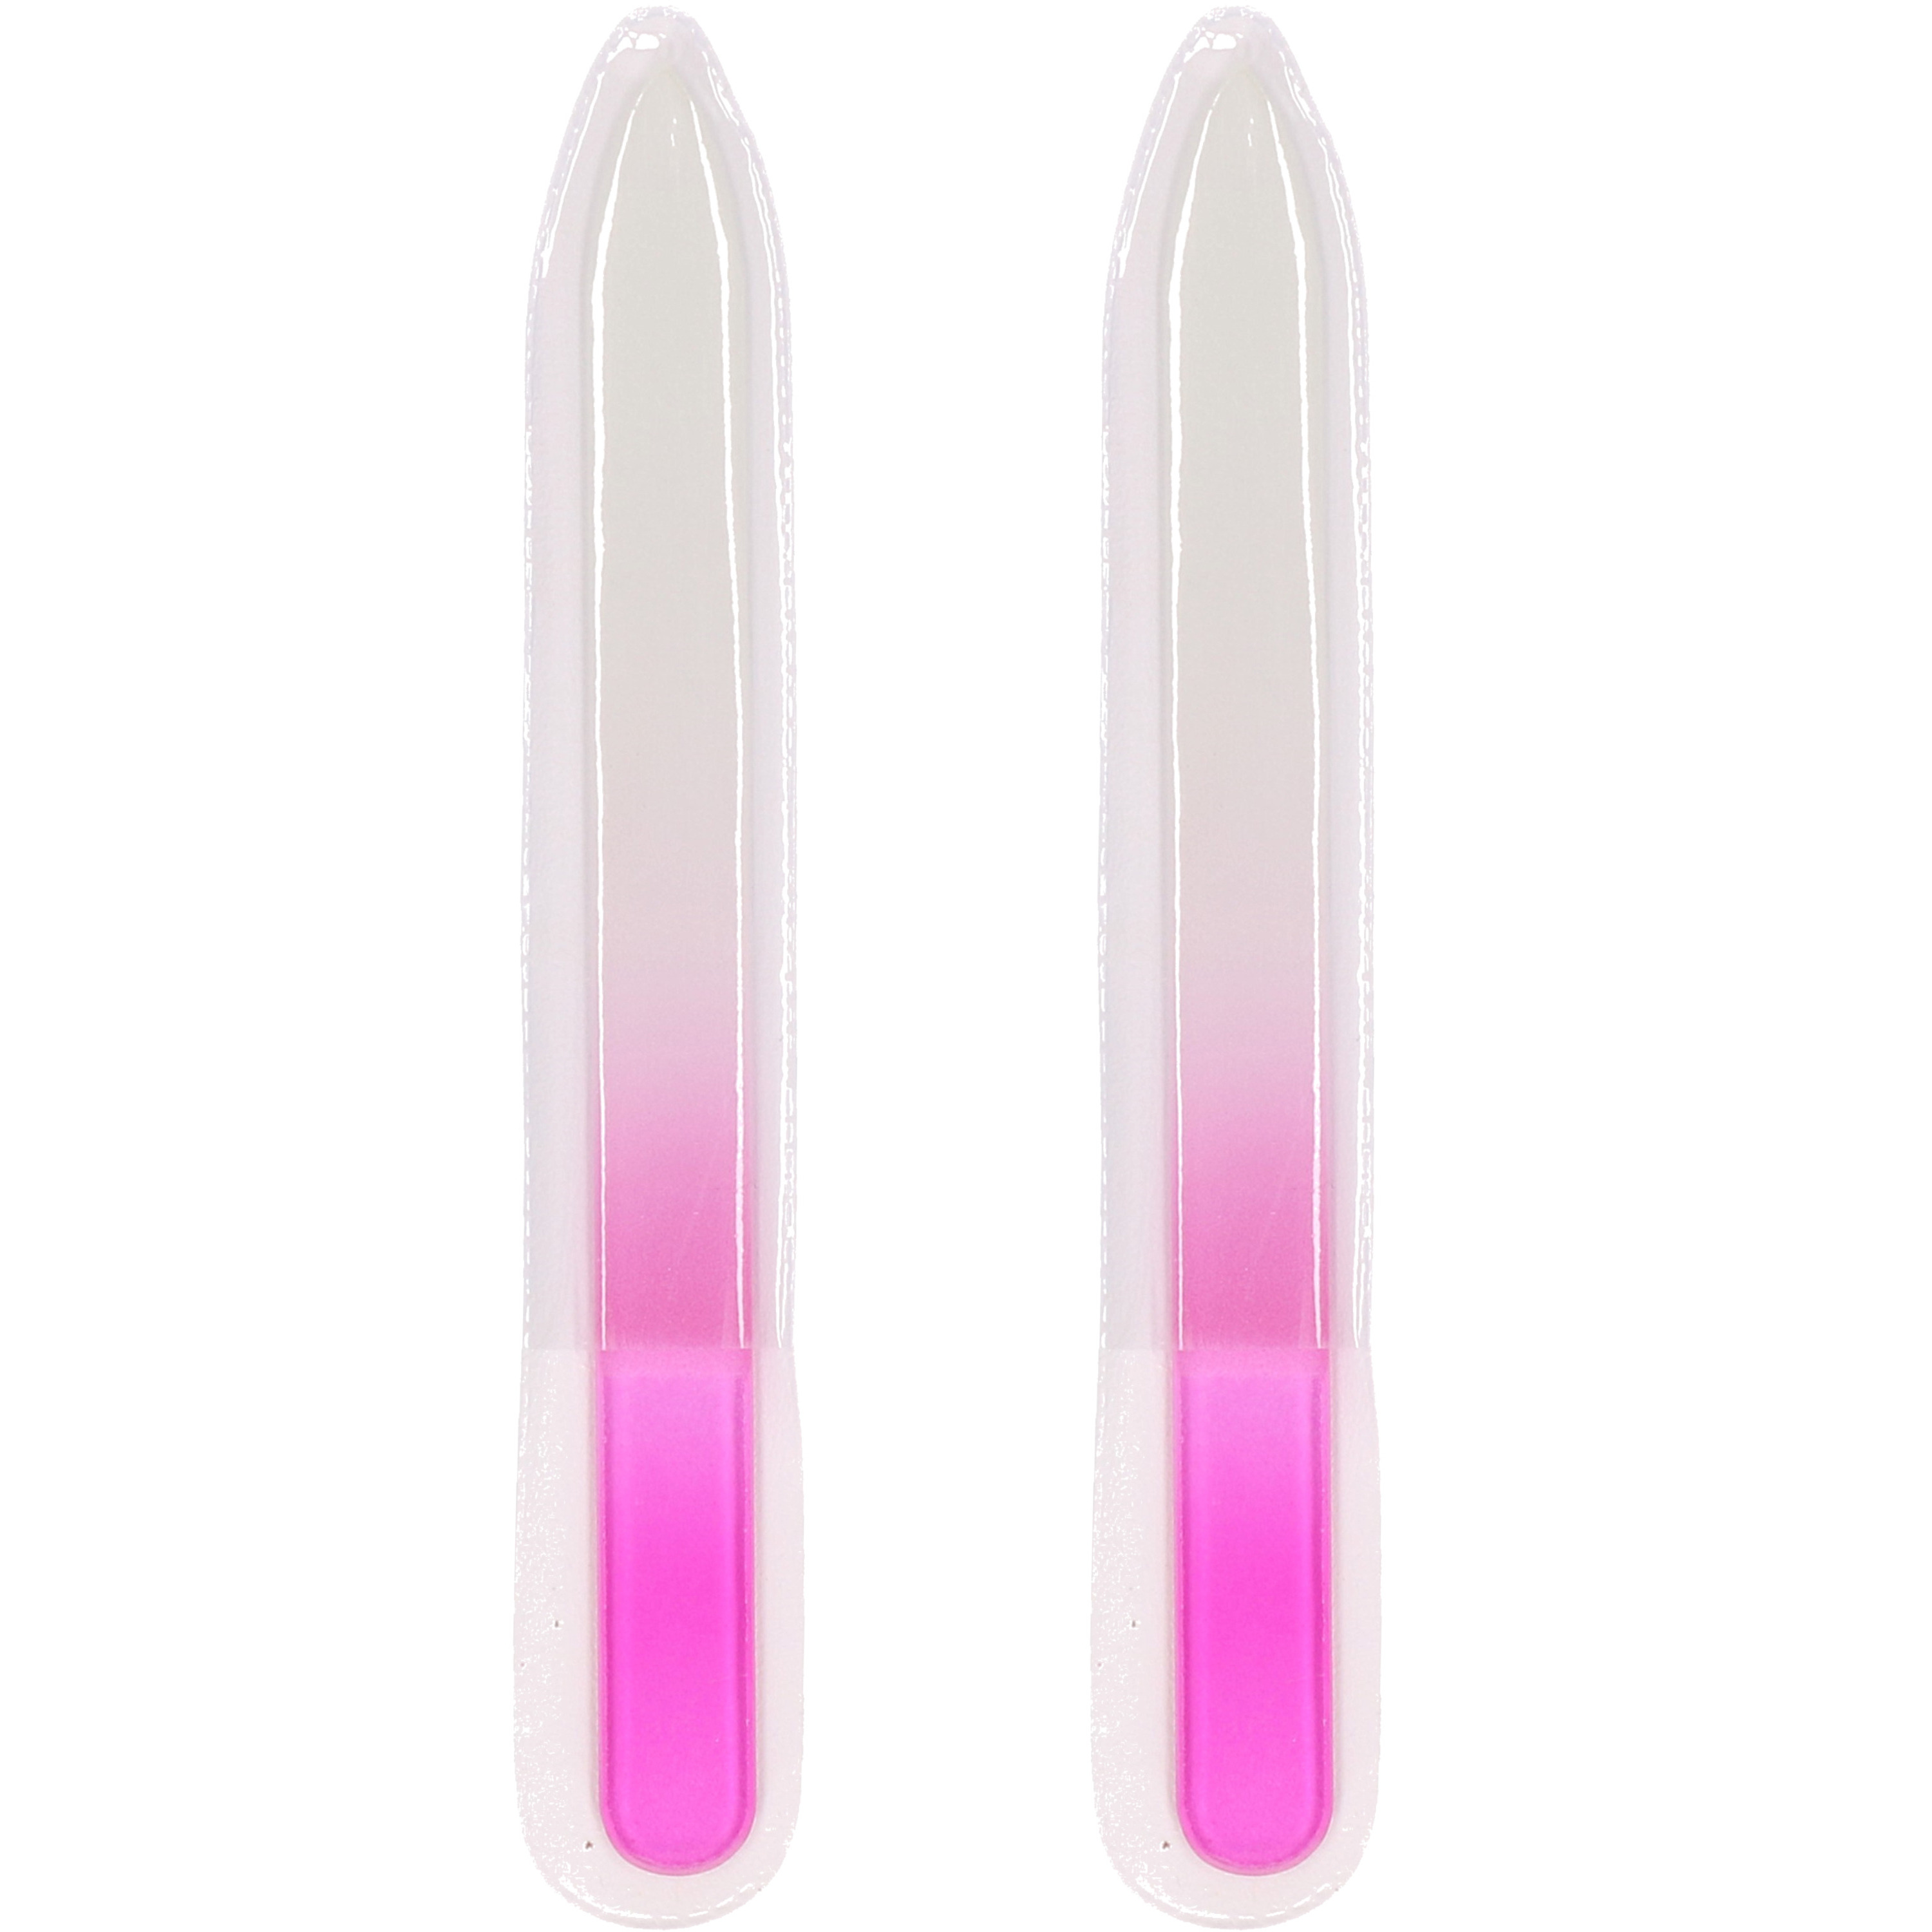 Nagelvijlen van glas 2x stuks roze 14 cm in beschermhoesje